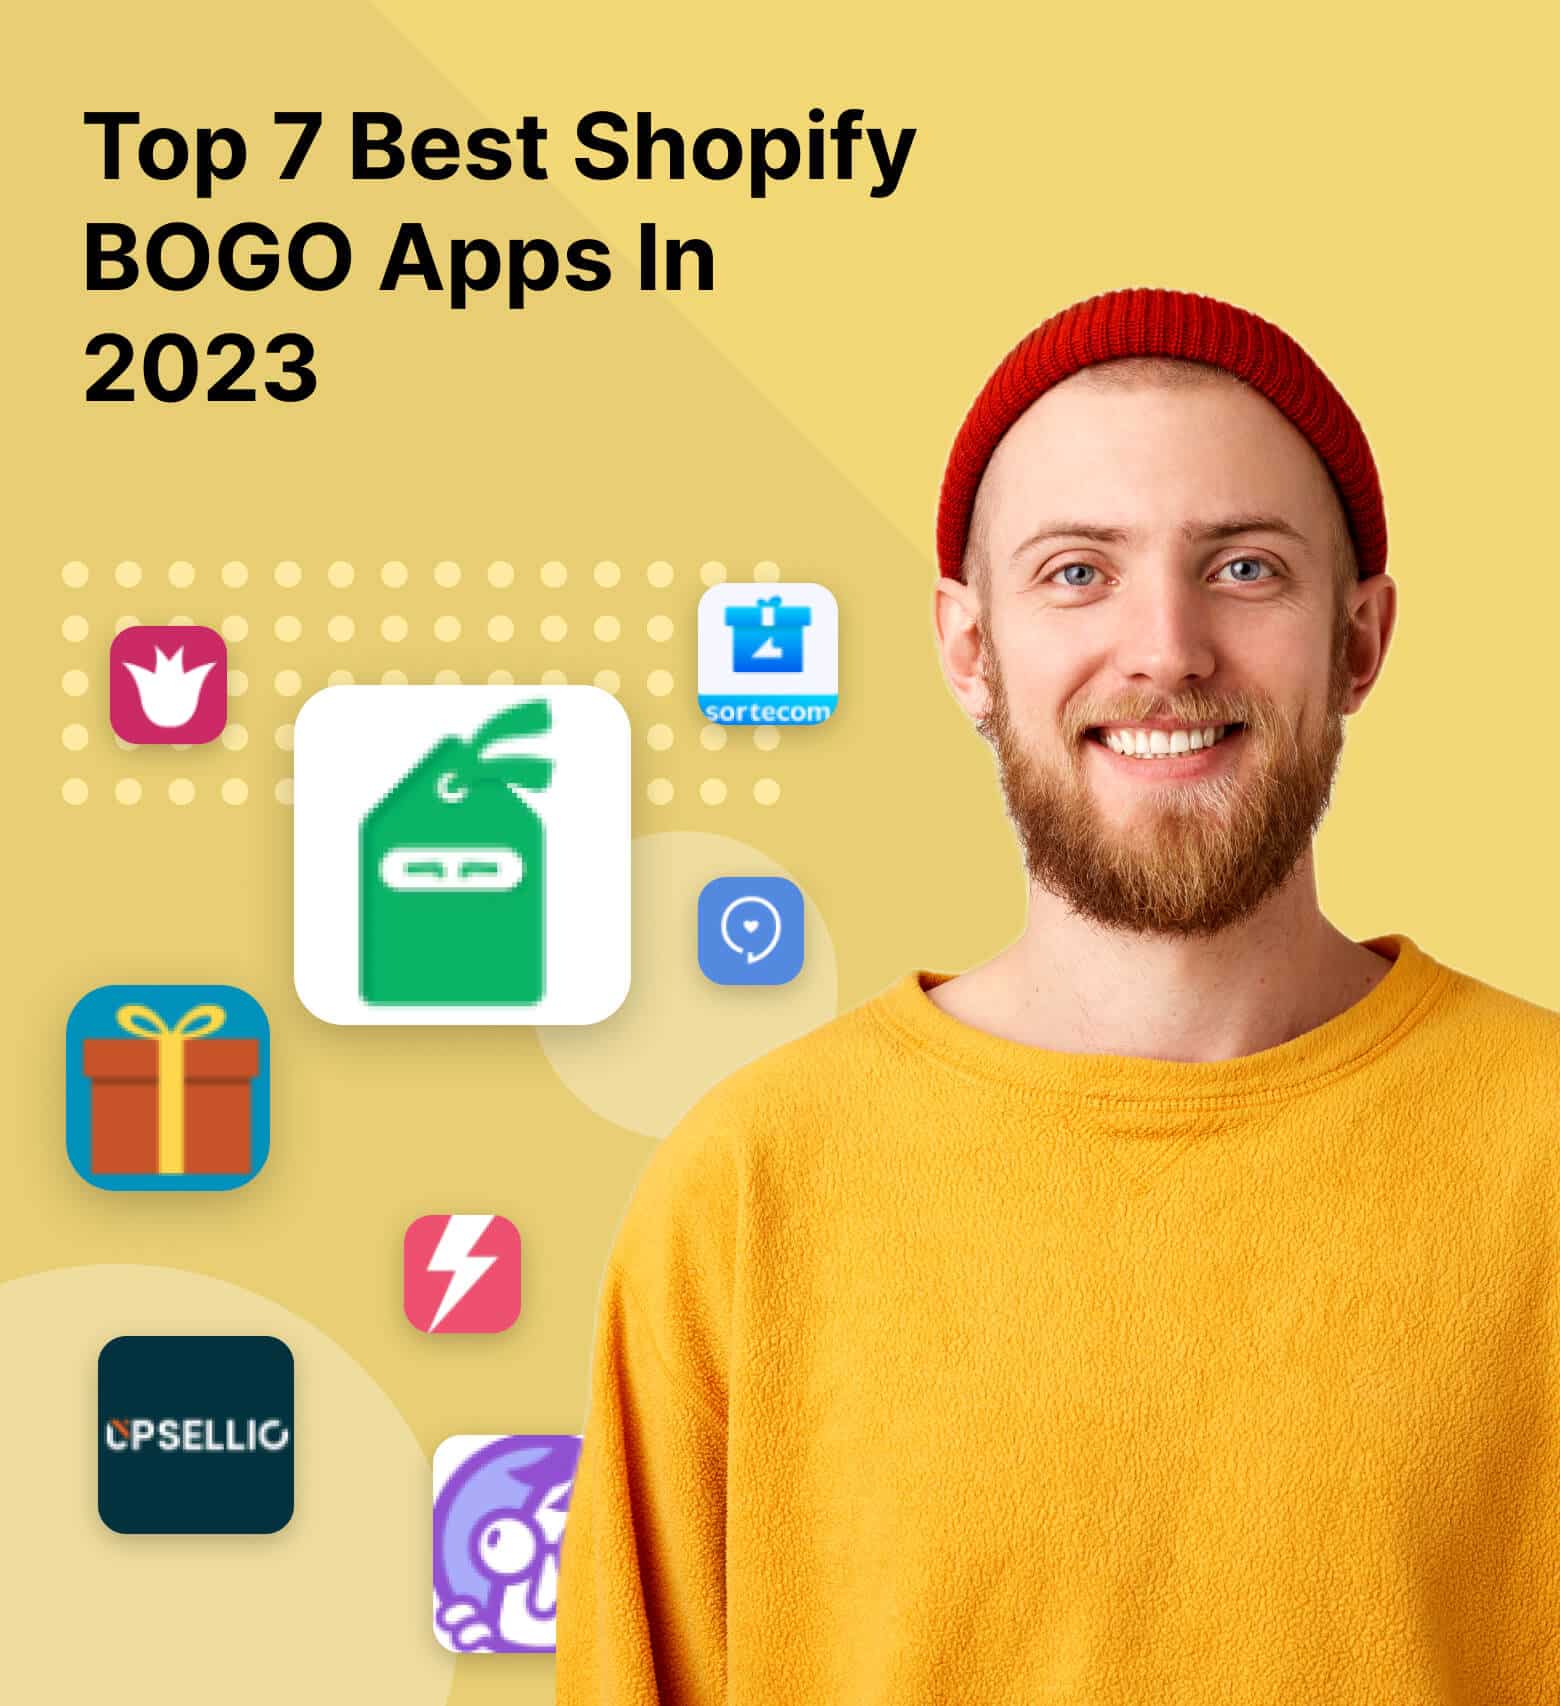 Best Shopify BOGO Apps